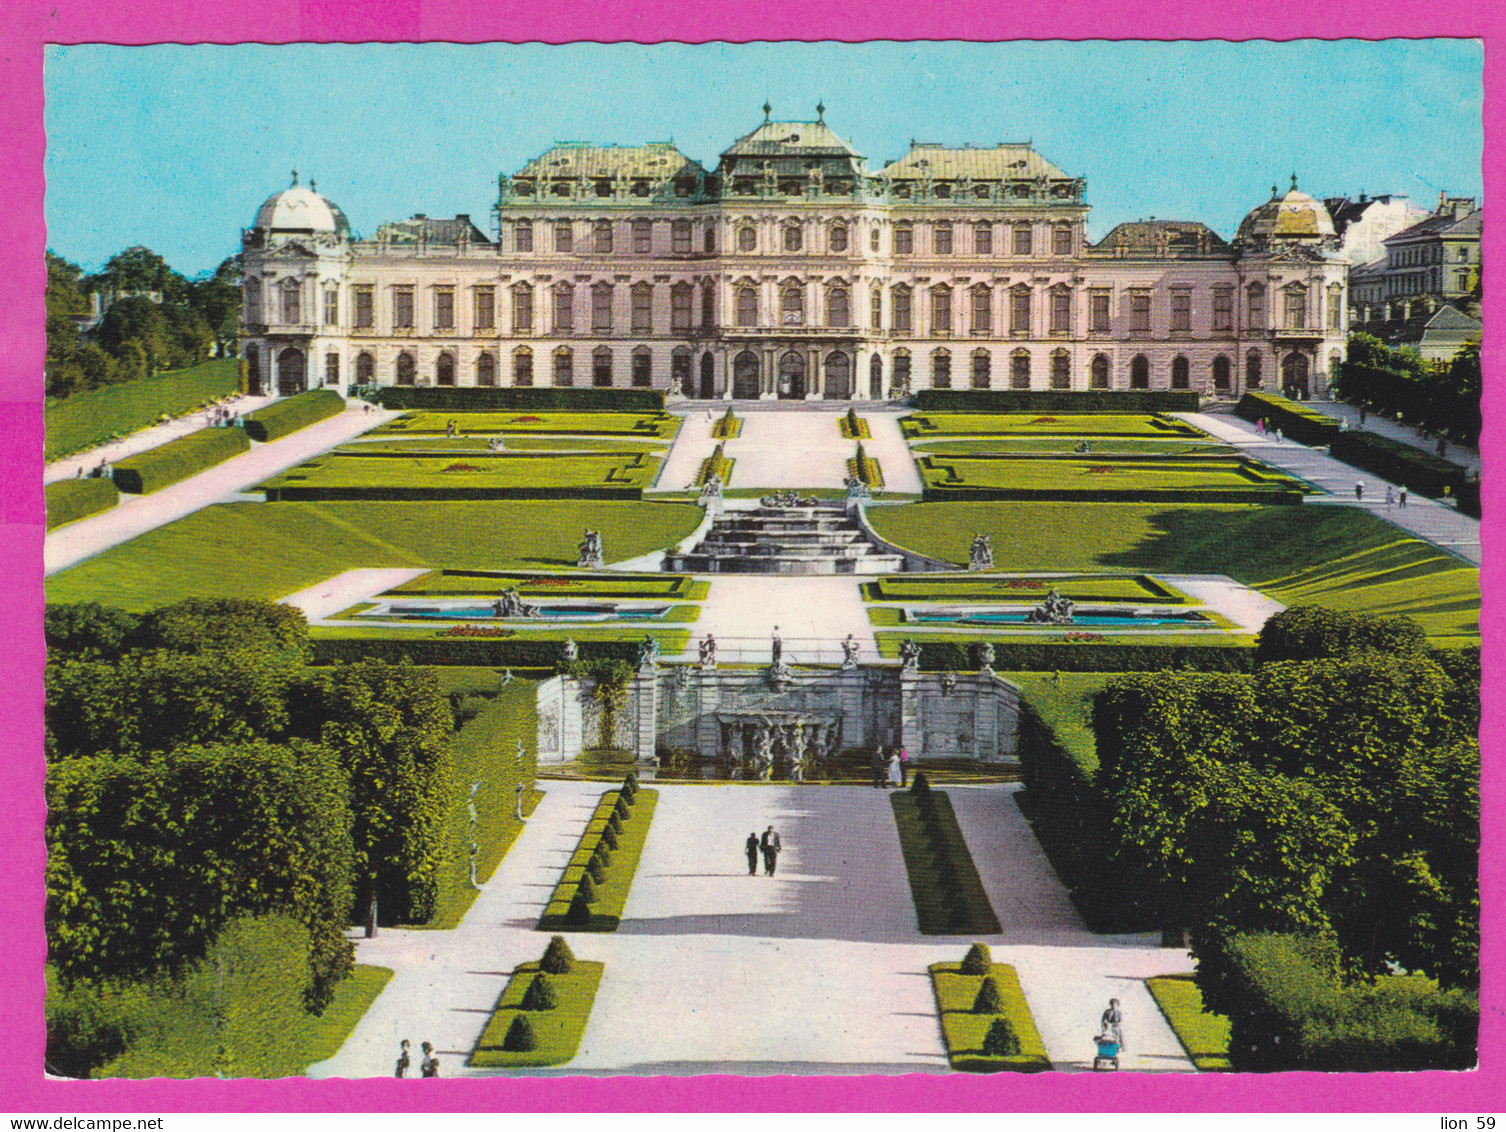 281086 / Austria Wien Vienna - Belvedere Is A Historic Building Complex  PC 6086 HDH Österreich Autriche - Belvedere